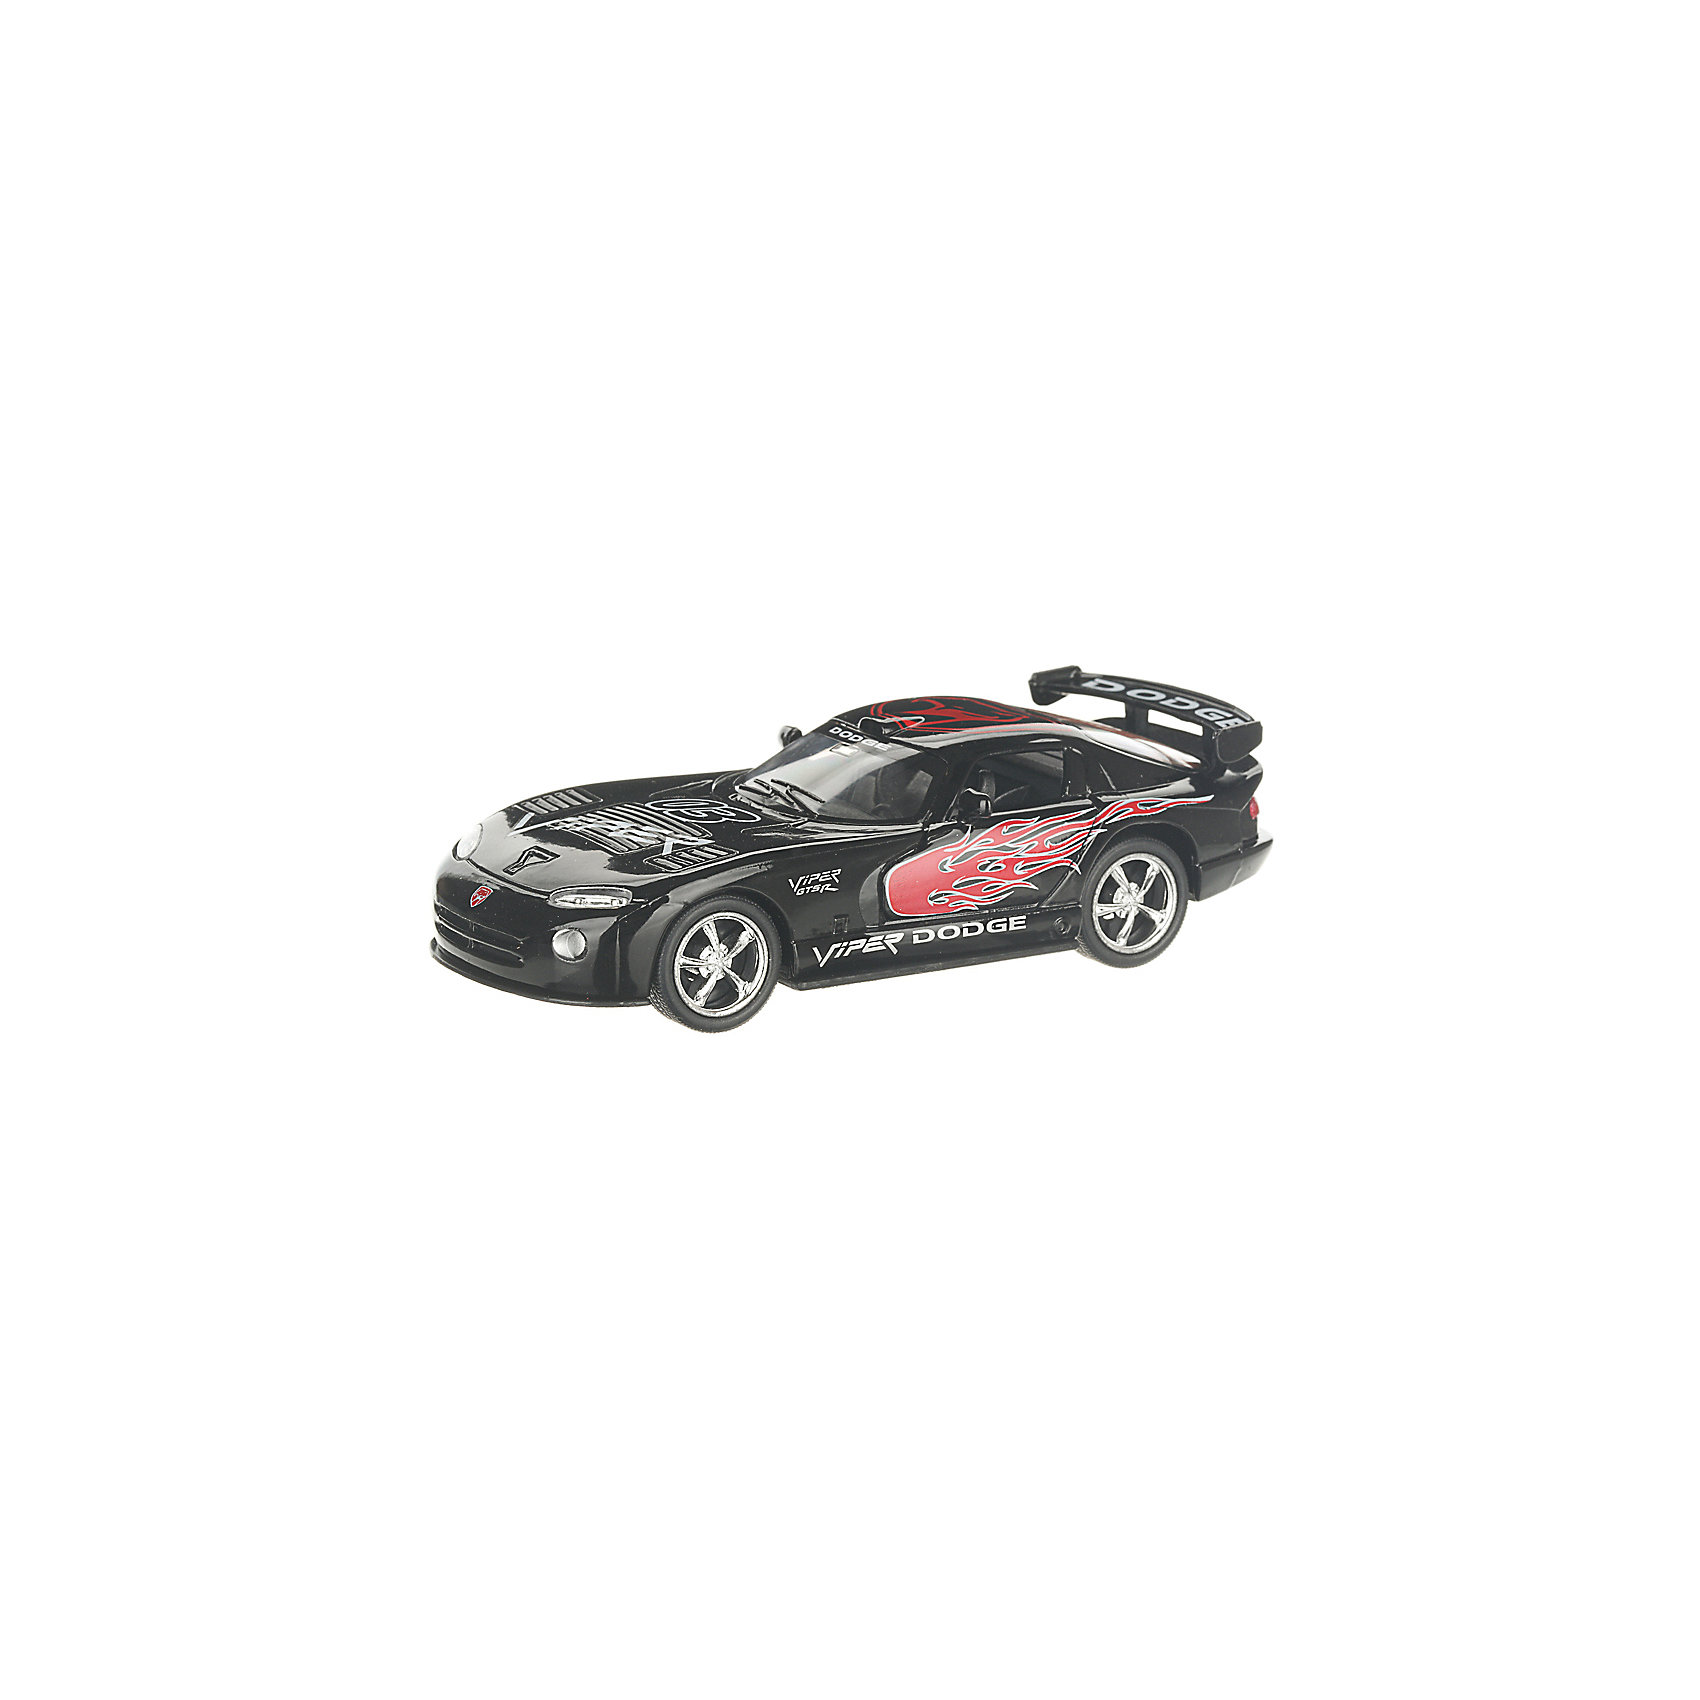 Коллекционная машинка Dodge Viper раскрашенный, чёрная Serinity Toys 13233001